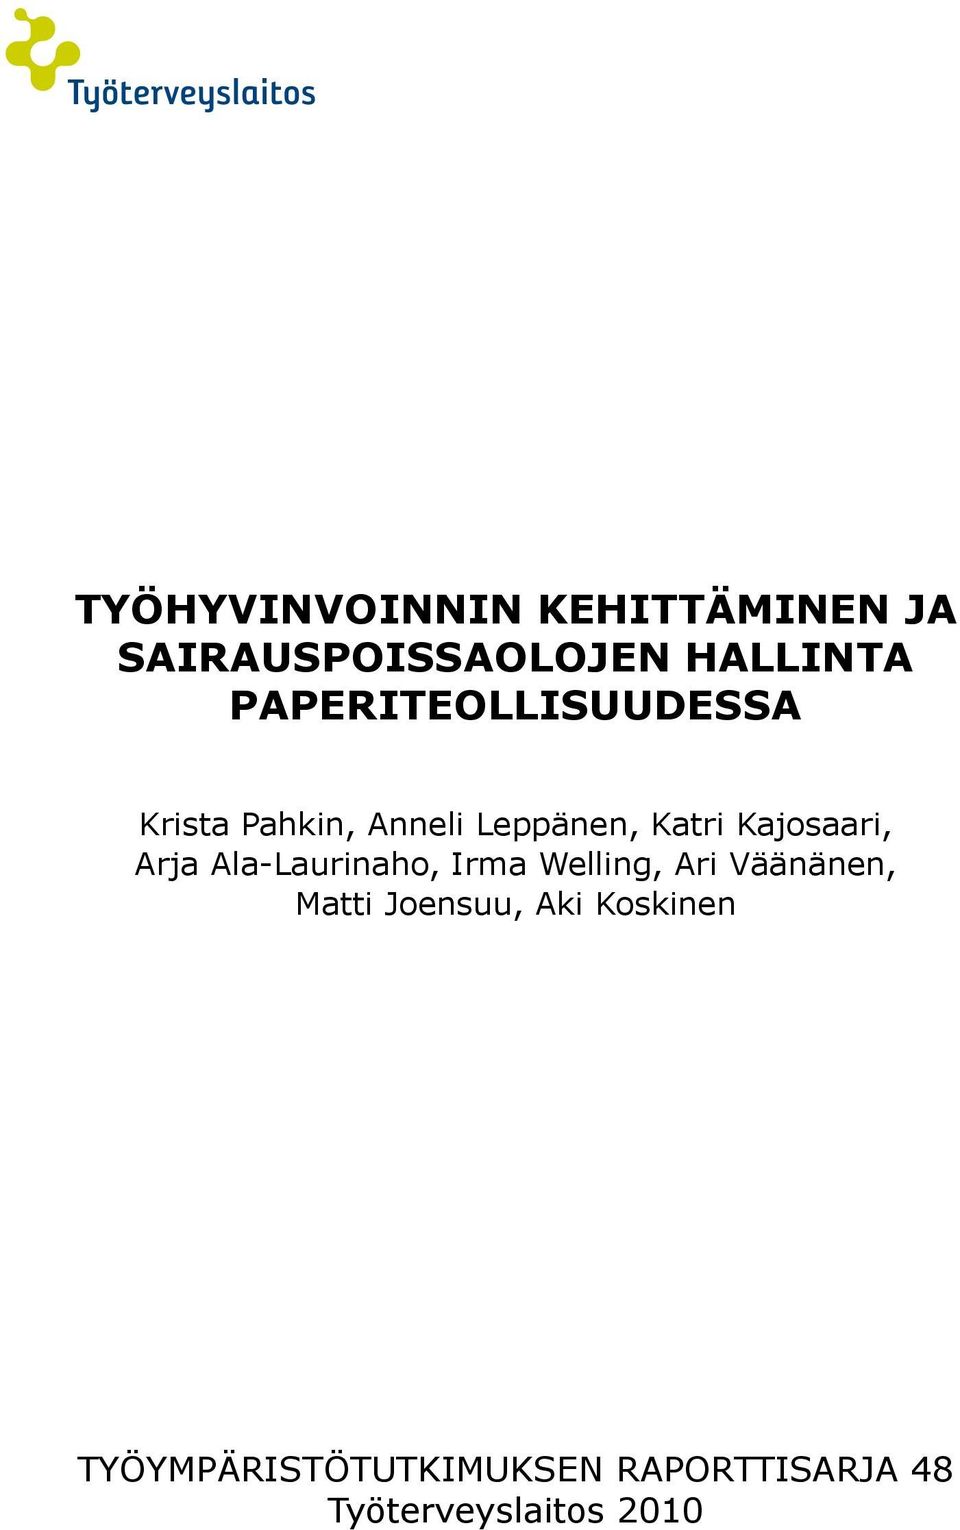 Kajosaari, Arja Ala-Laurinaho, Irma Welling, Ari Väänänen, Matti